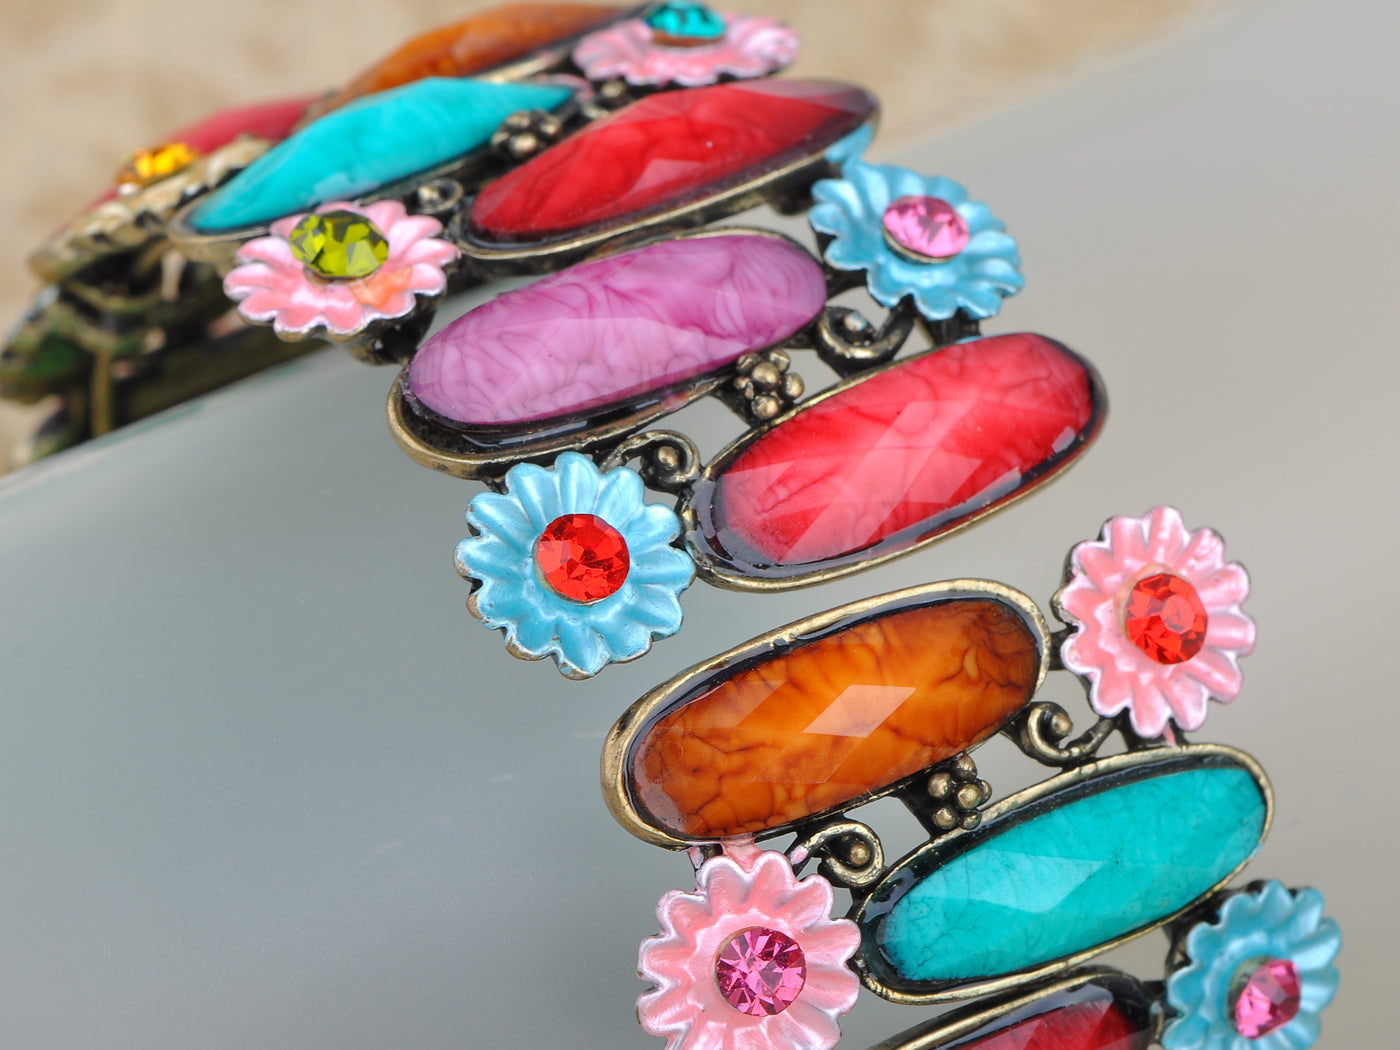 Antique Inspire Colorful Jeweled Gem Flower Bangle Bracelet